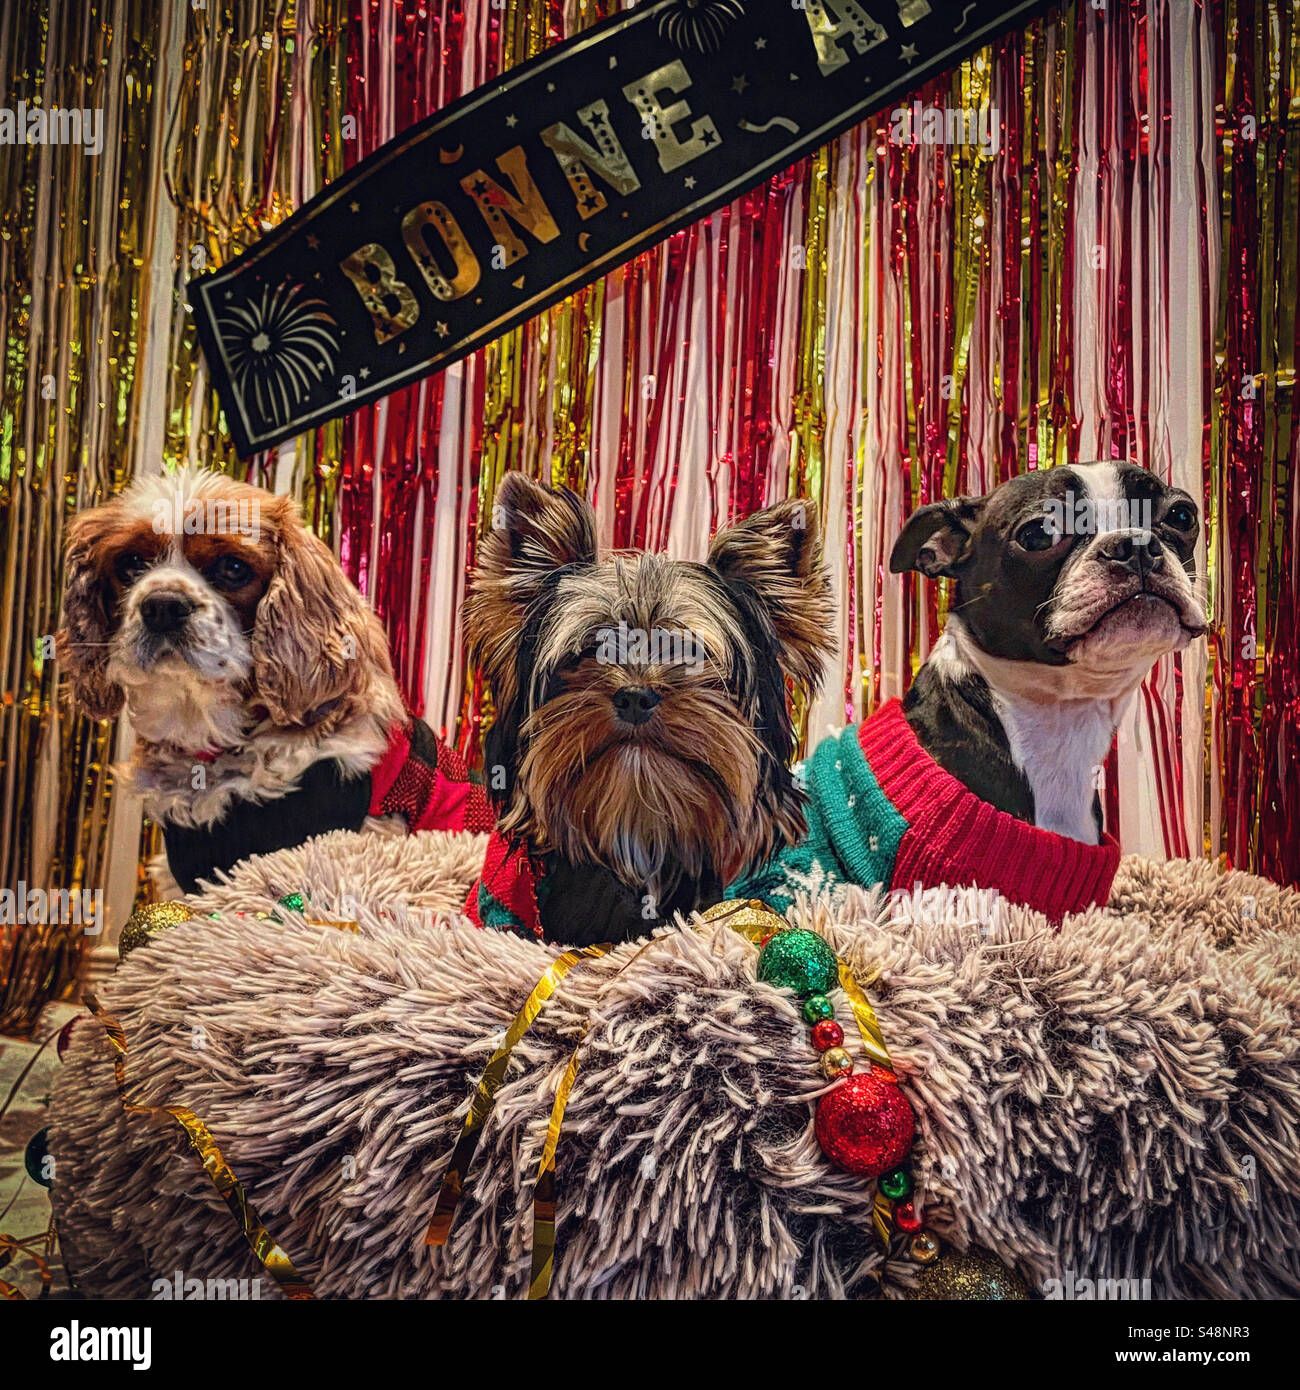 Festa di Capodanno con tre cani cocker spaniel, yorkshire terrier, boston terrier felice anno nuovo in stile francese con luccicante riccio rosso e oro e decorazioni natalizie Foto Stock